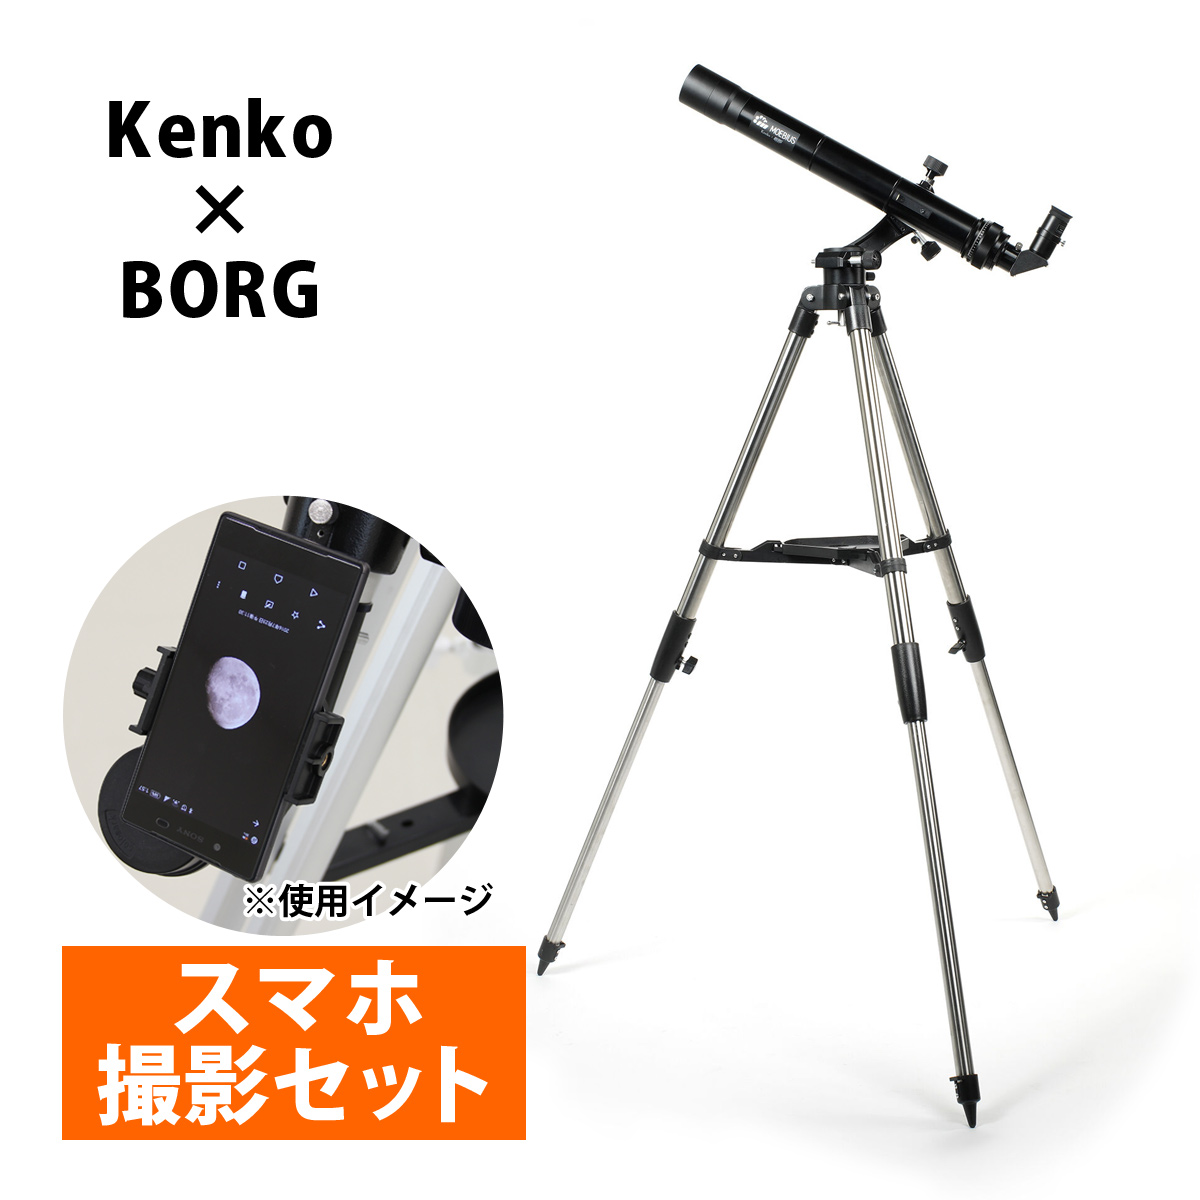 三脚 Kenko×BORG MOEBIUS M-M5経緯台+三脚セット 天体望遠鏡 メビウス